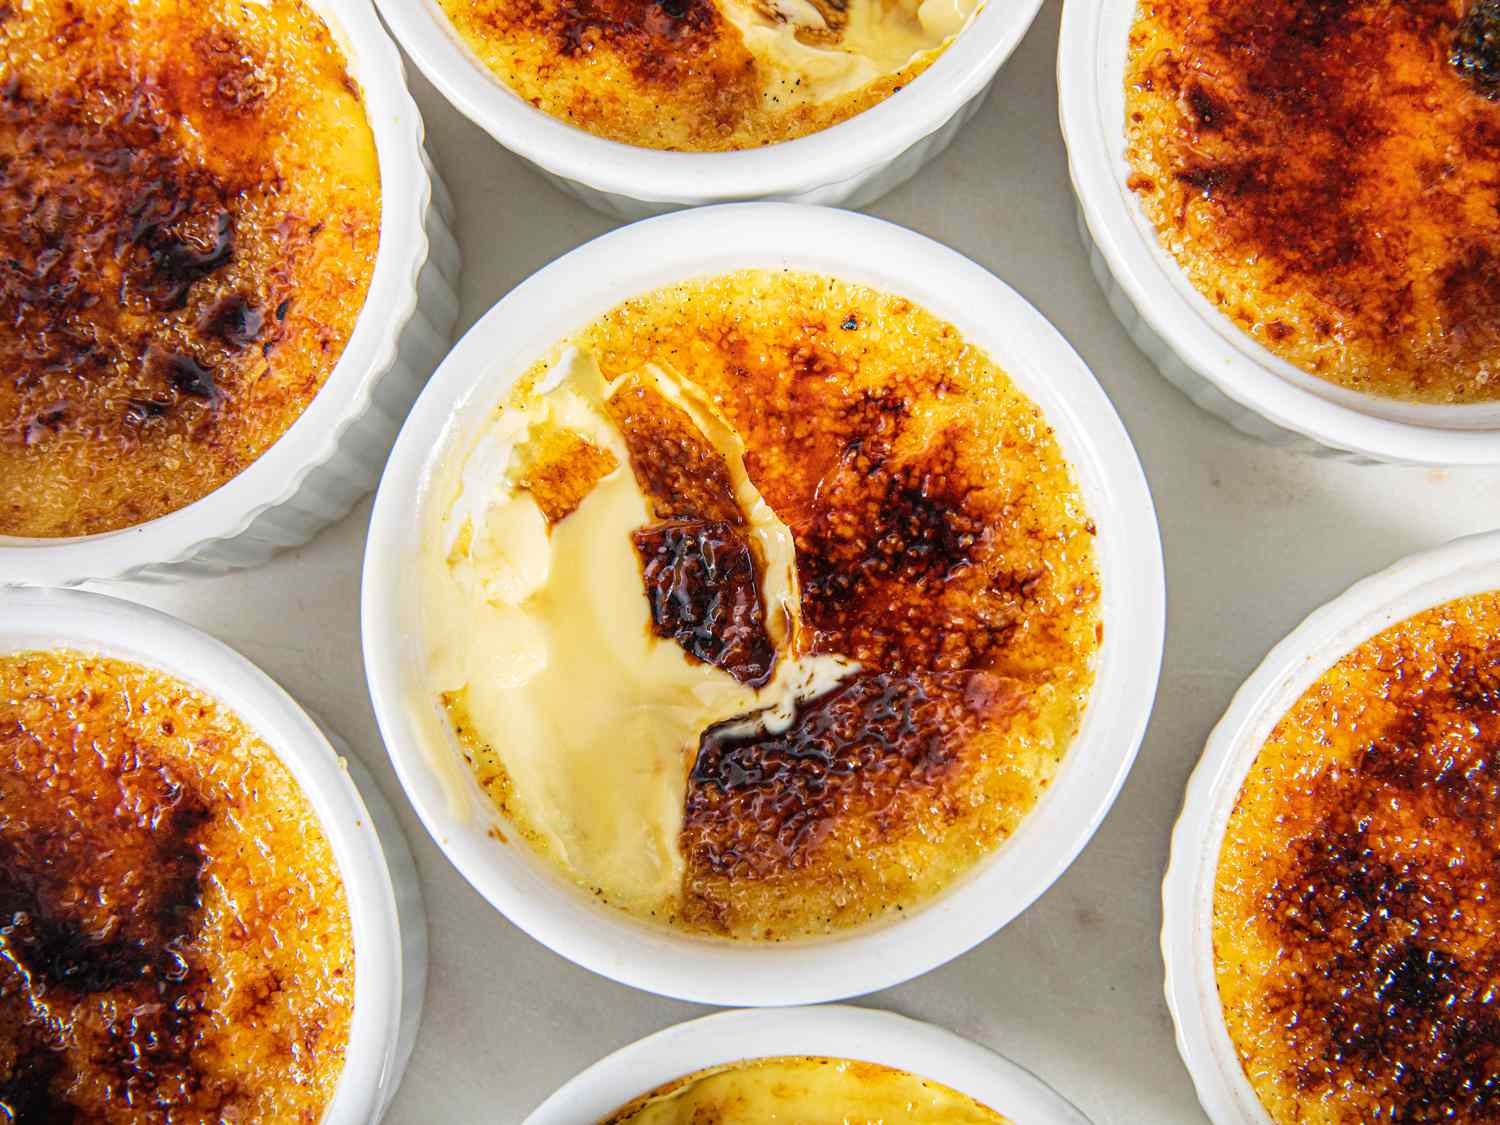 How to Caramelize Crème Brûlée